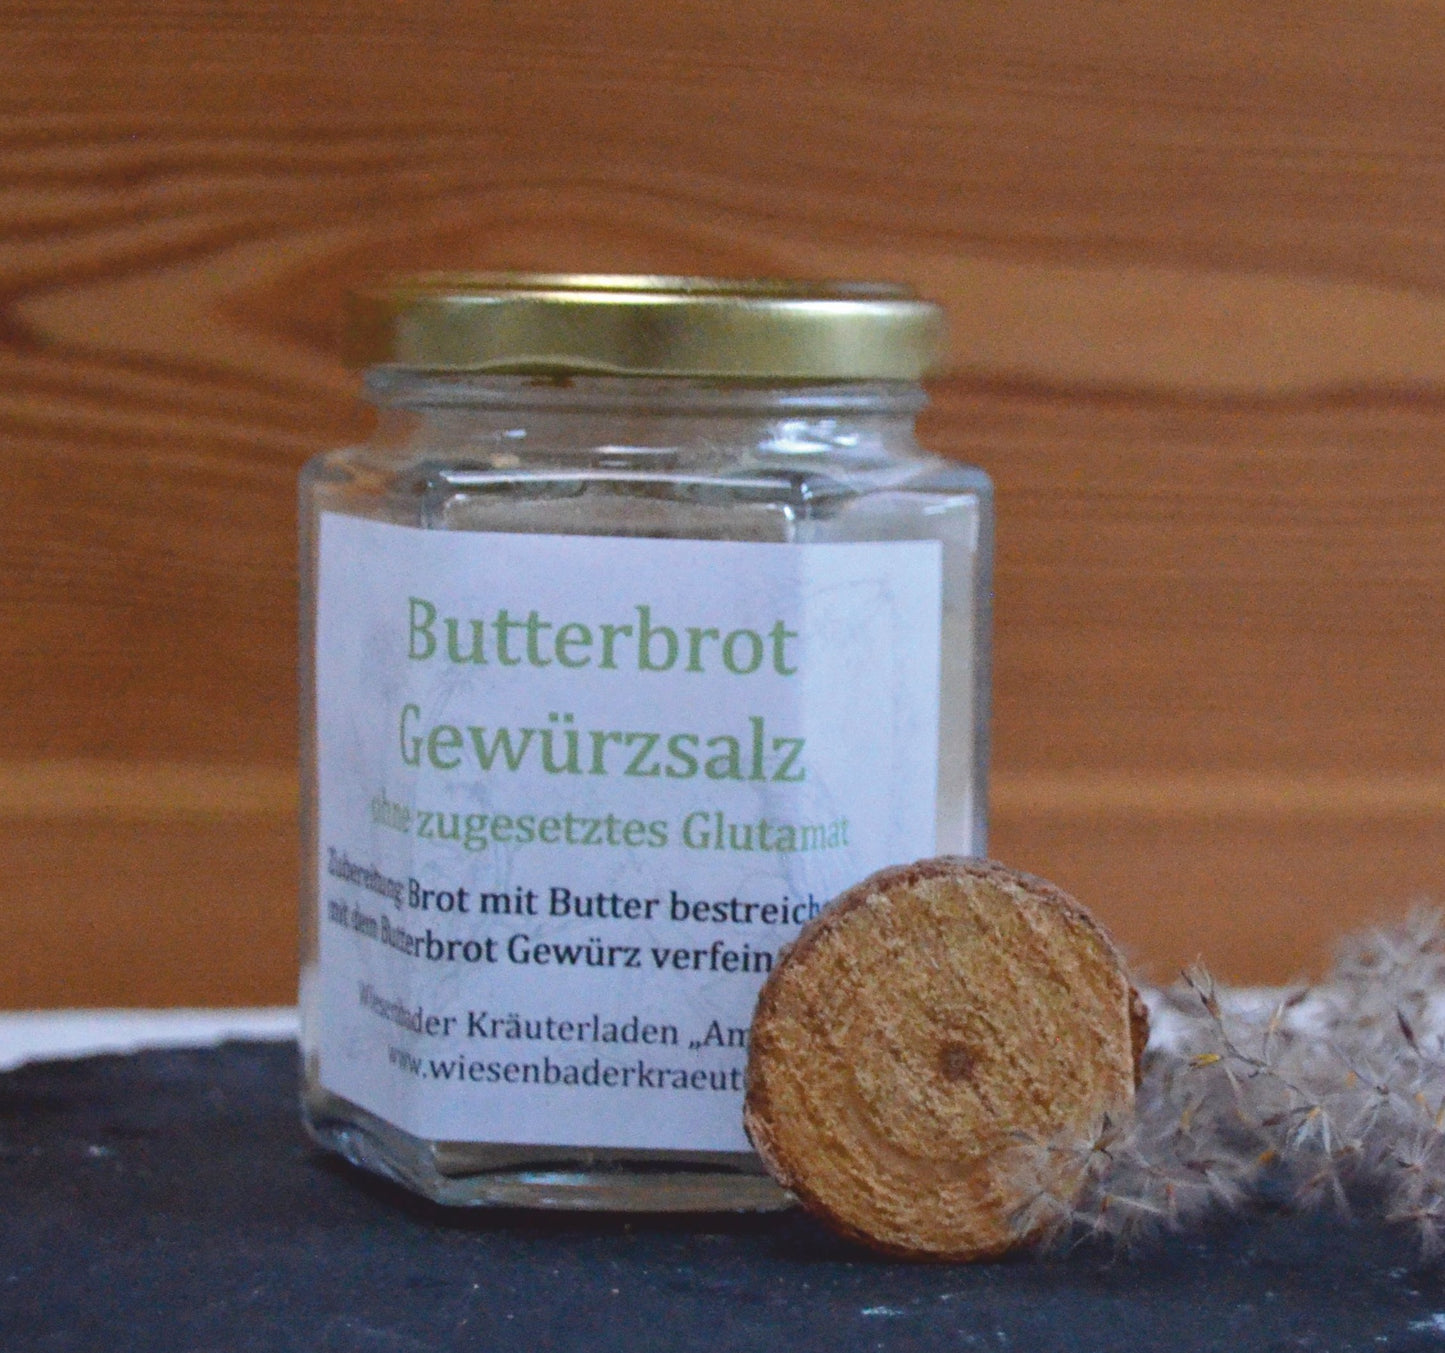 Butterbrot-Gewürzsalz ohne zugesetztes Glutamat